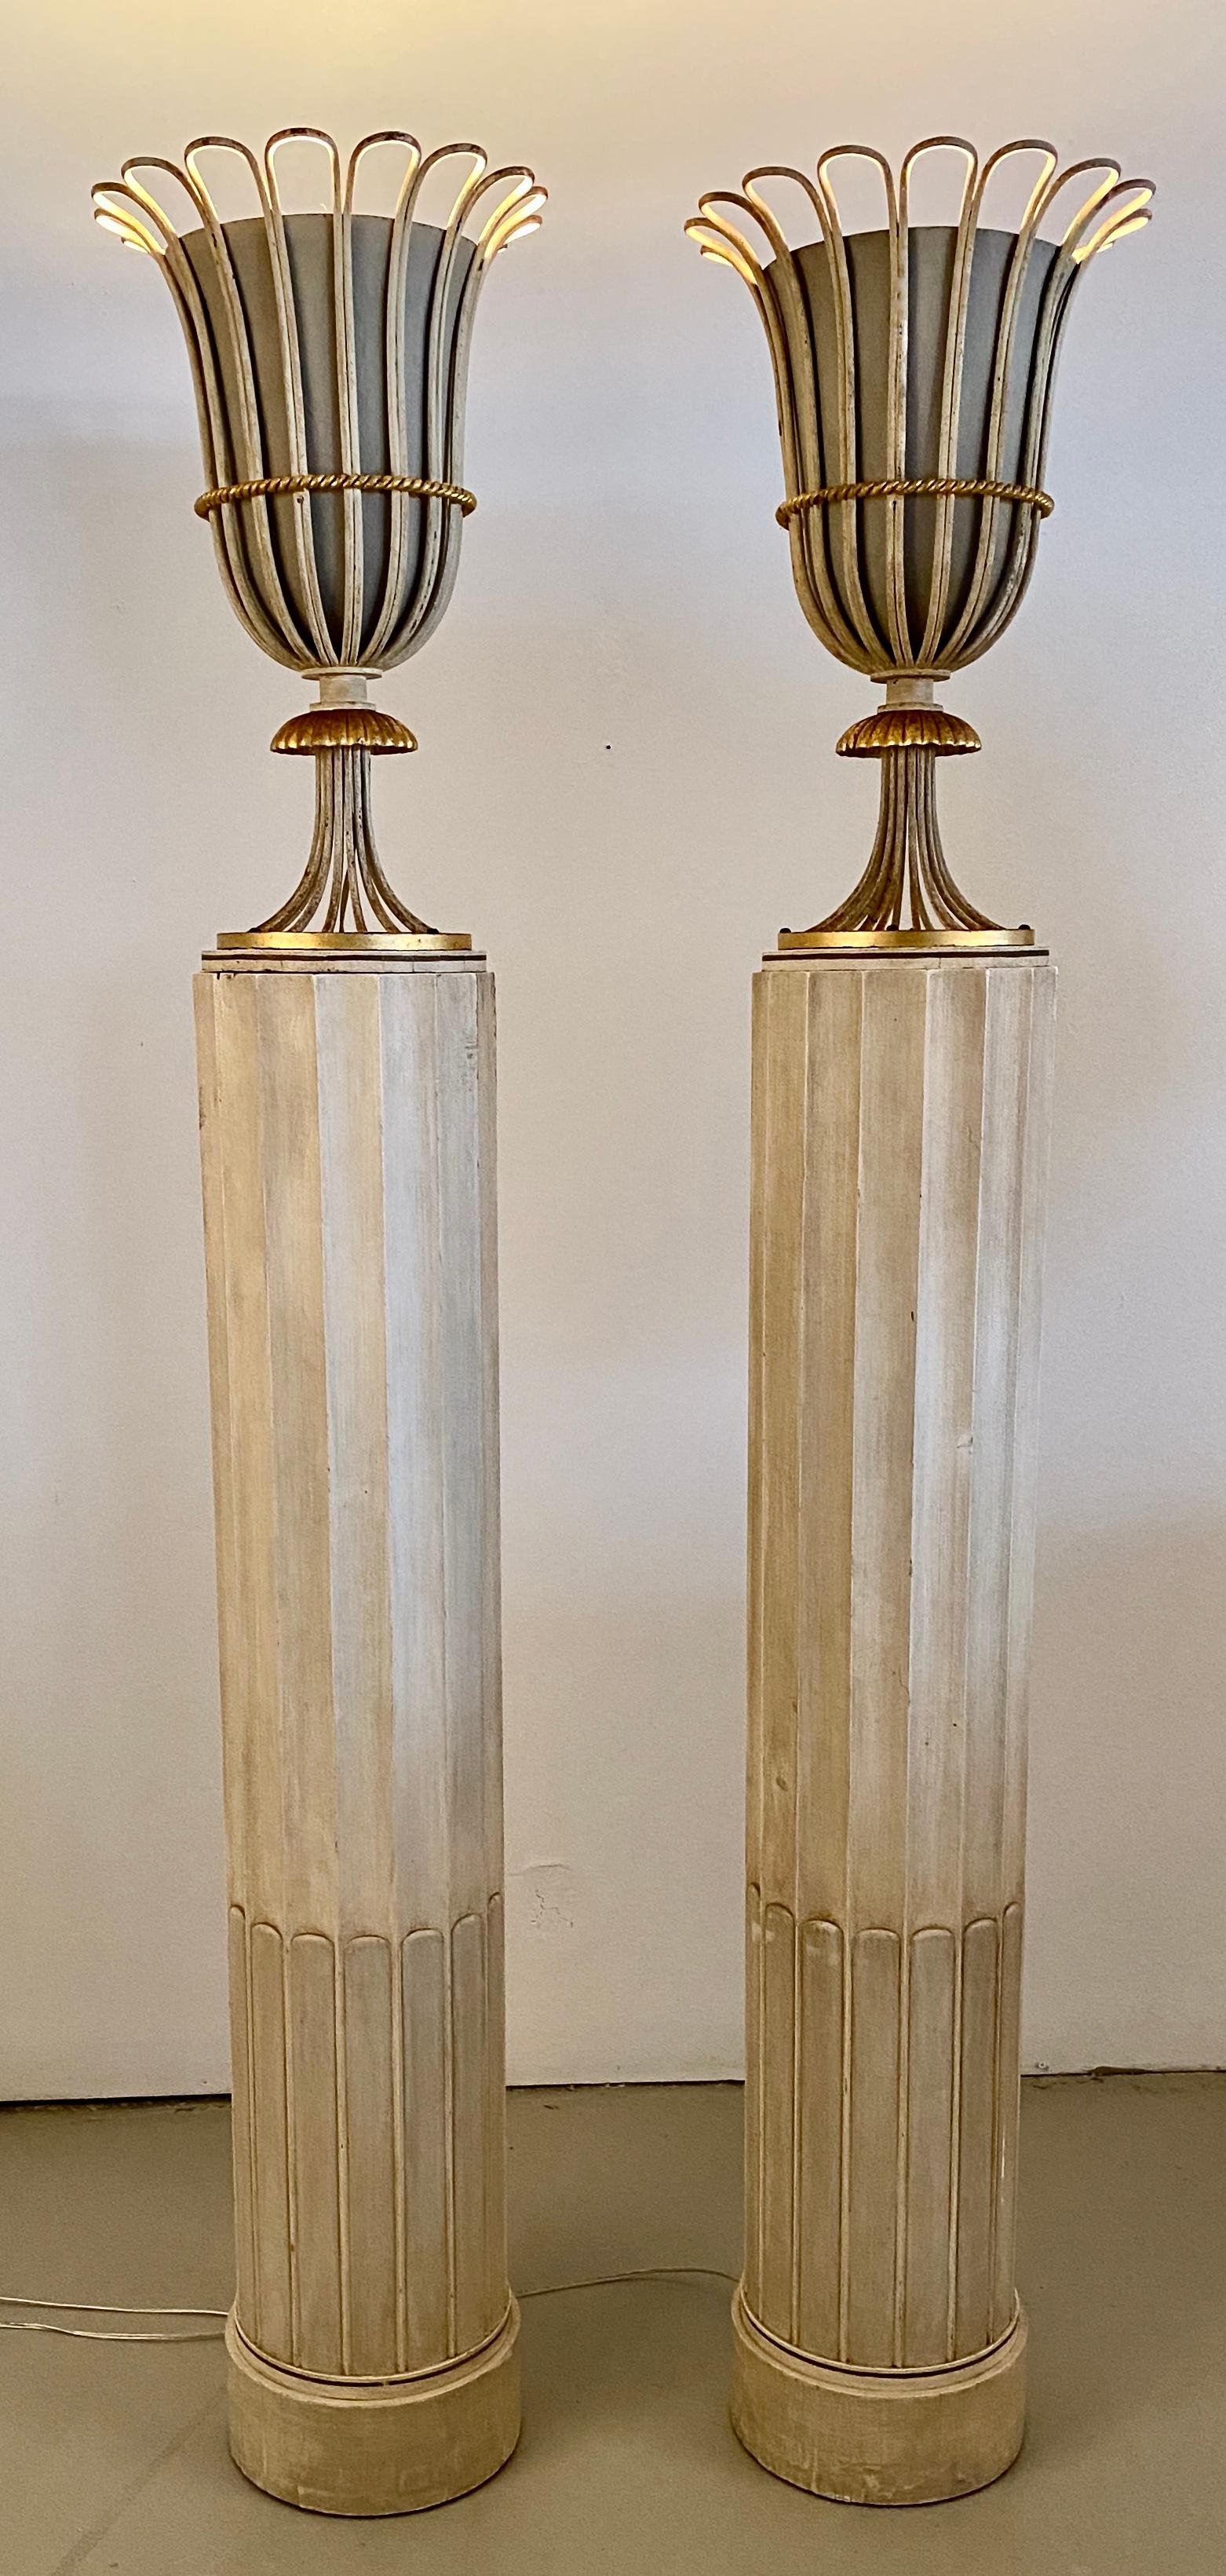 Ein glamouröses Paar säulenförmiger Fackeln von Grosfeld House im Stil des Hollywood Regency. Die kannelierten Säulenfüße sind aus Holz, die urnenförmigen Beleuchtungskörper aus Metall mit handvergoldeten Details. Die Leuchten wurden neu verkabelt,